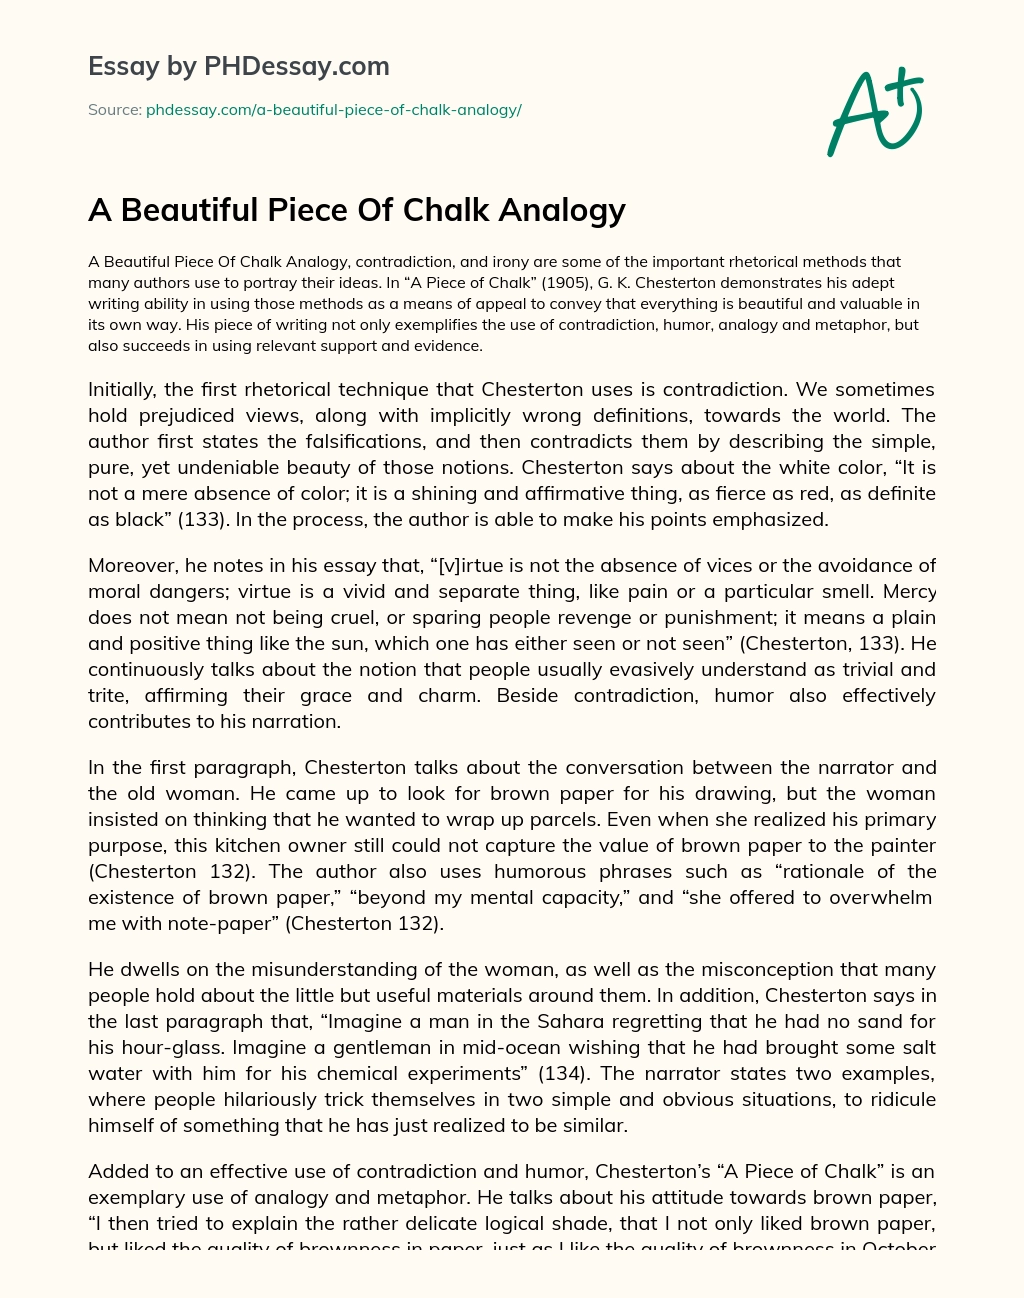 A Beautiful Piece Of Chalk Analogy essay